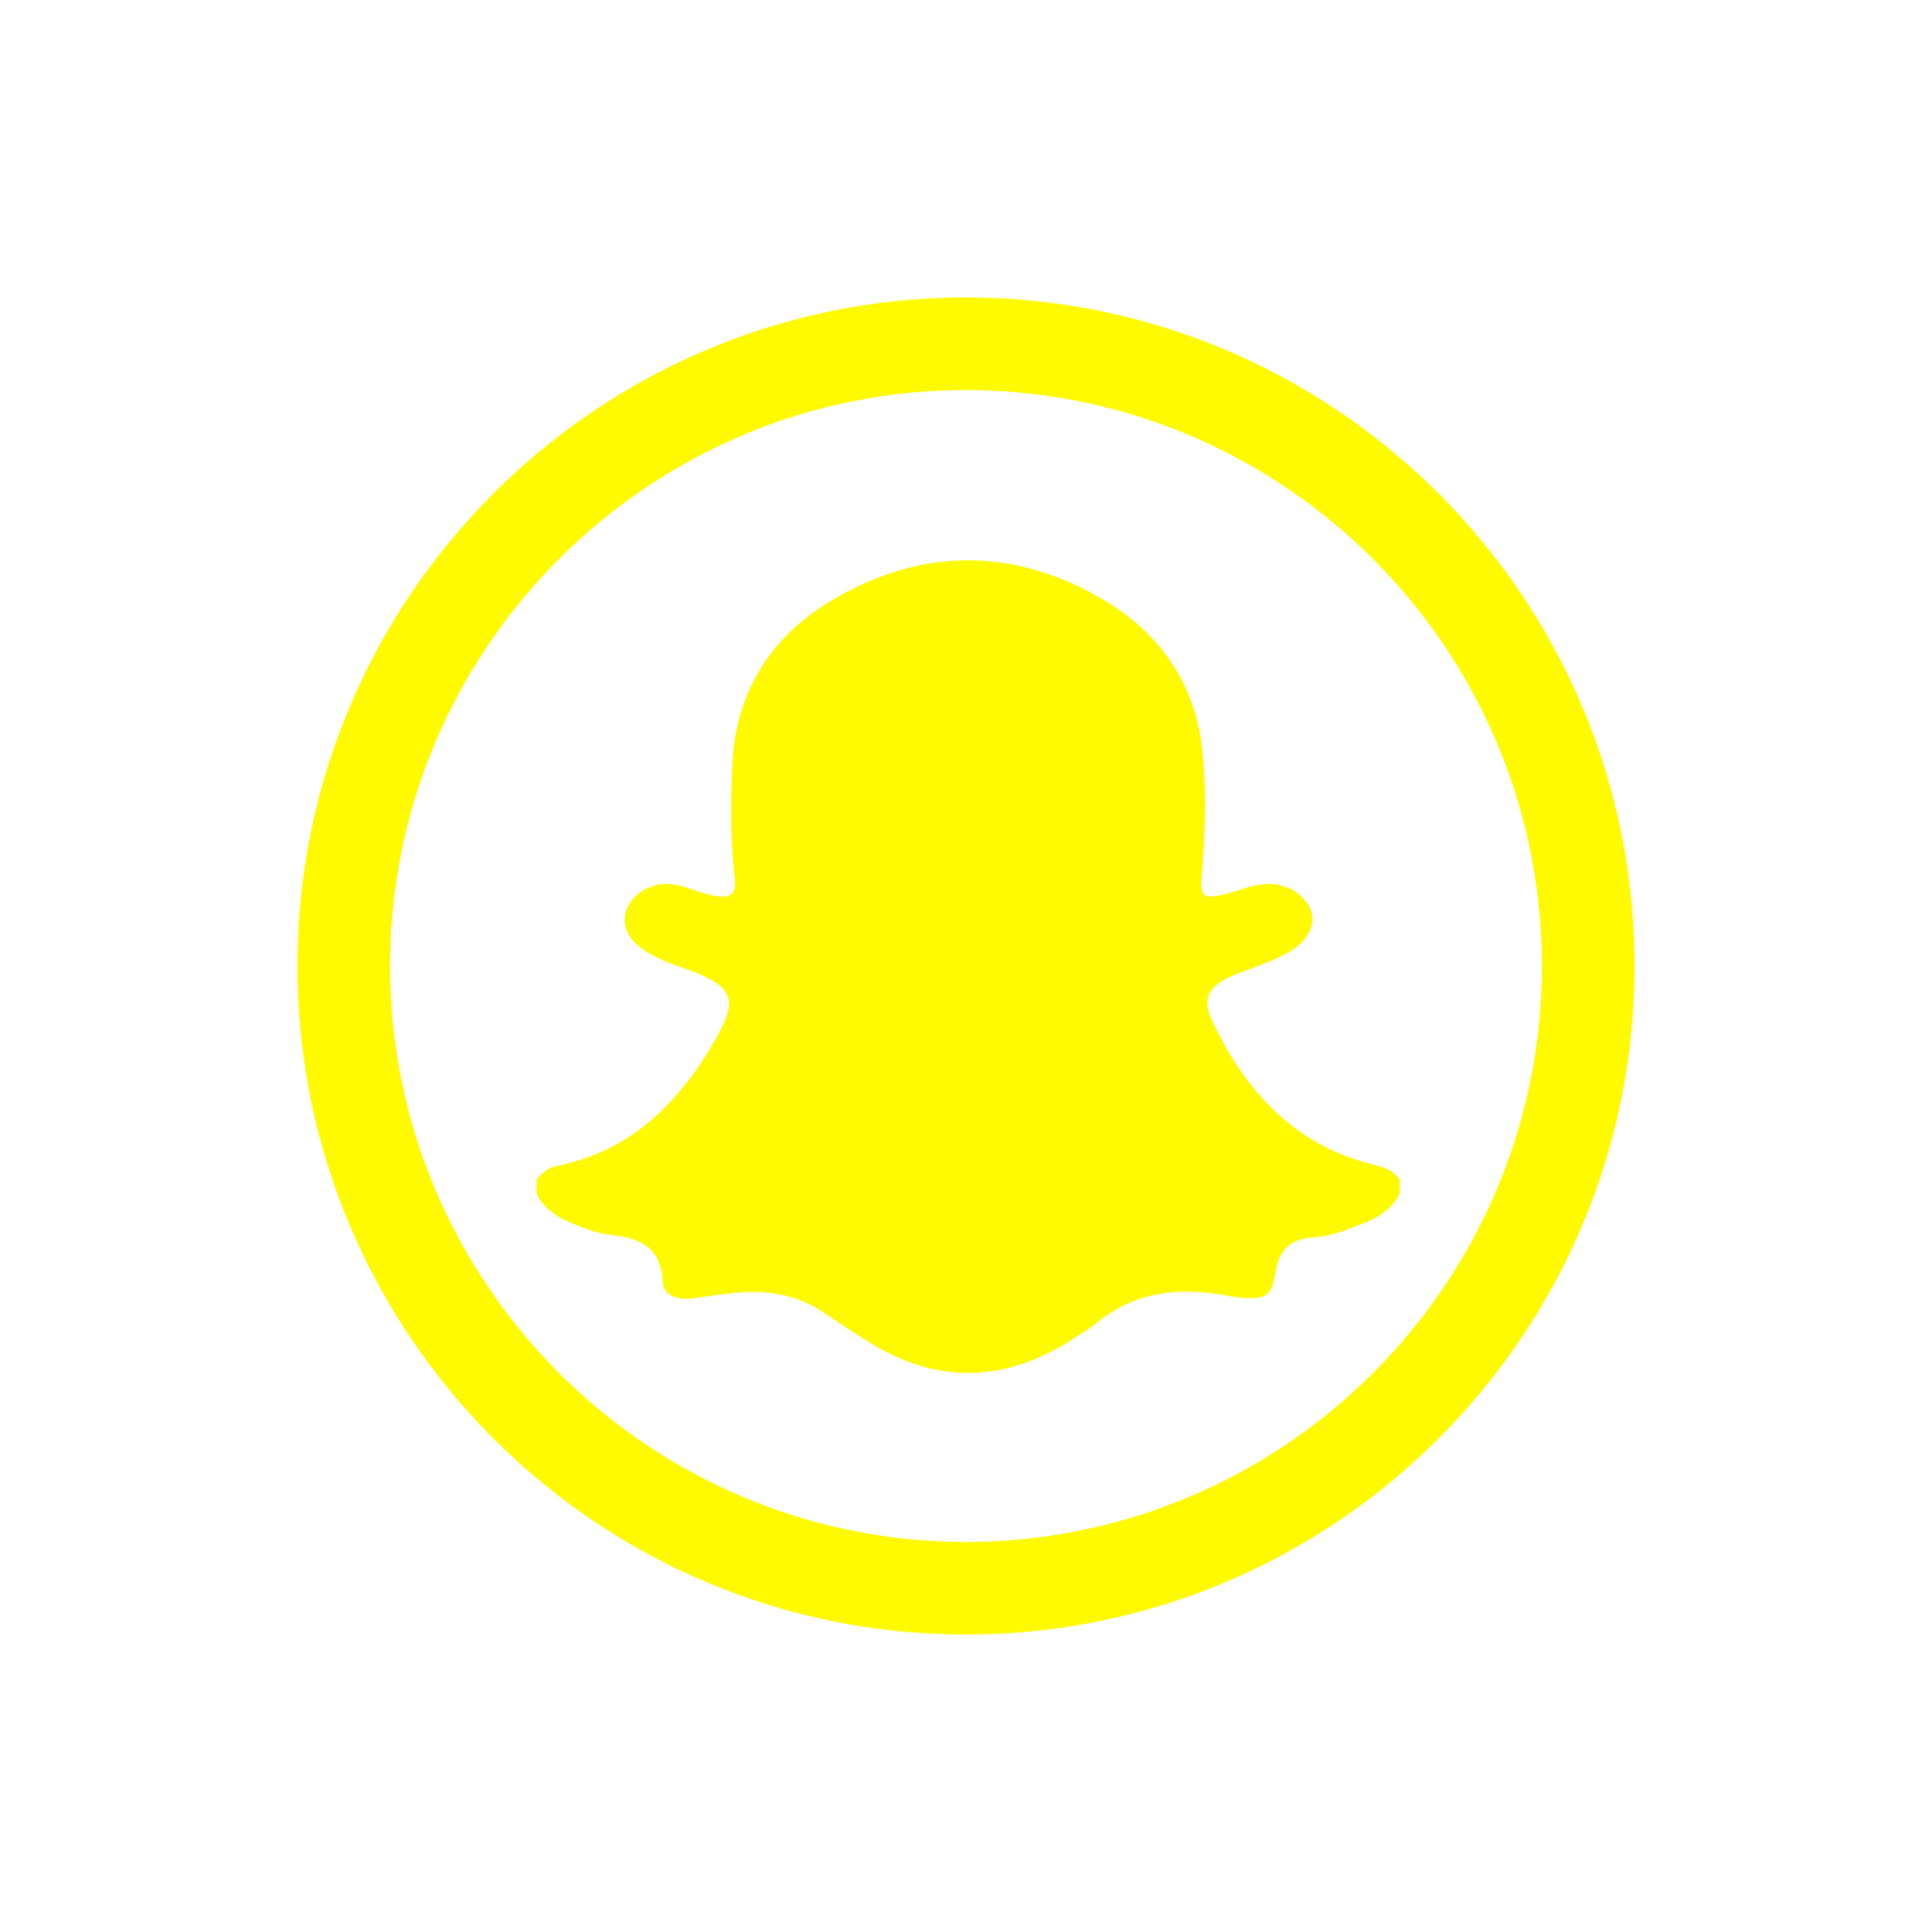 Snap chat logo png